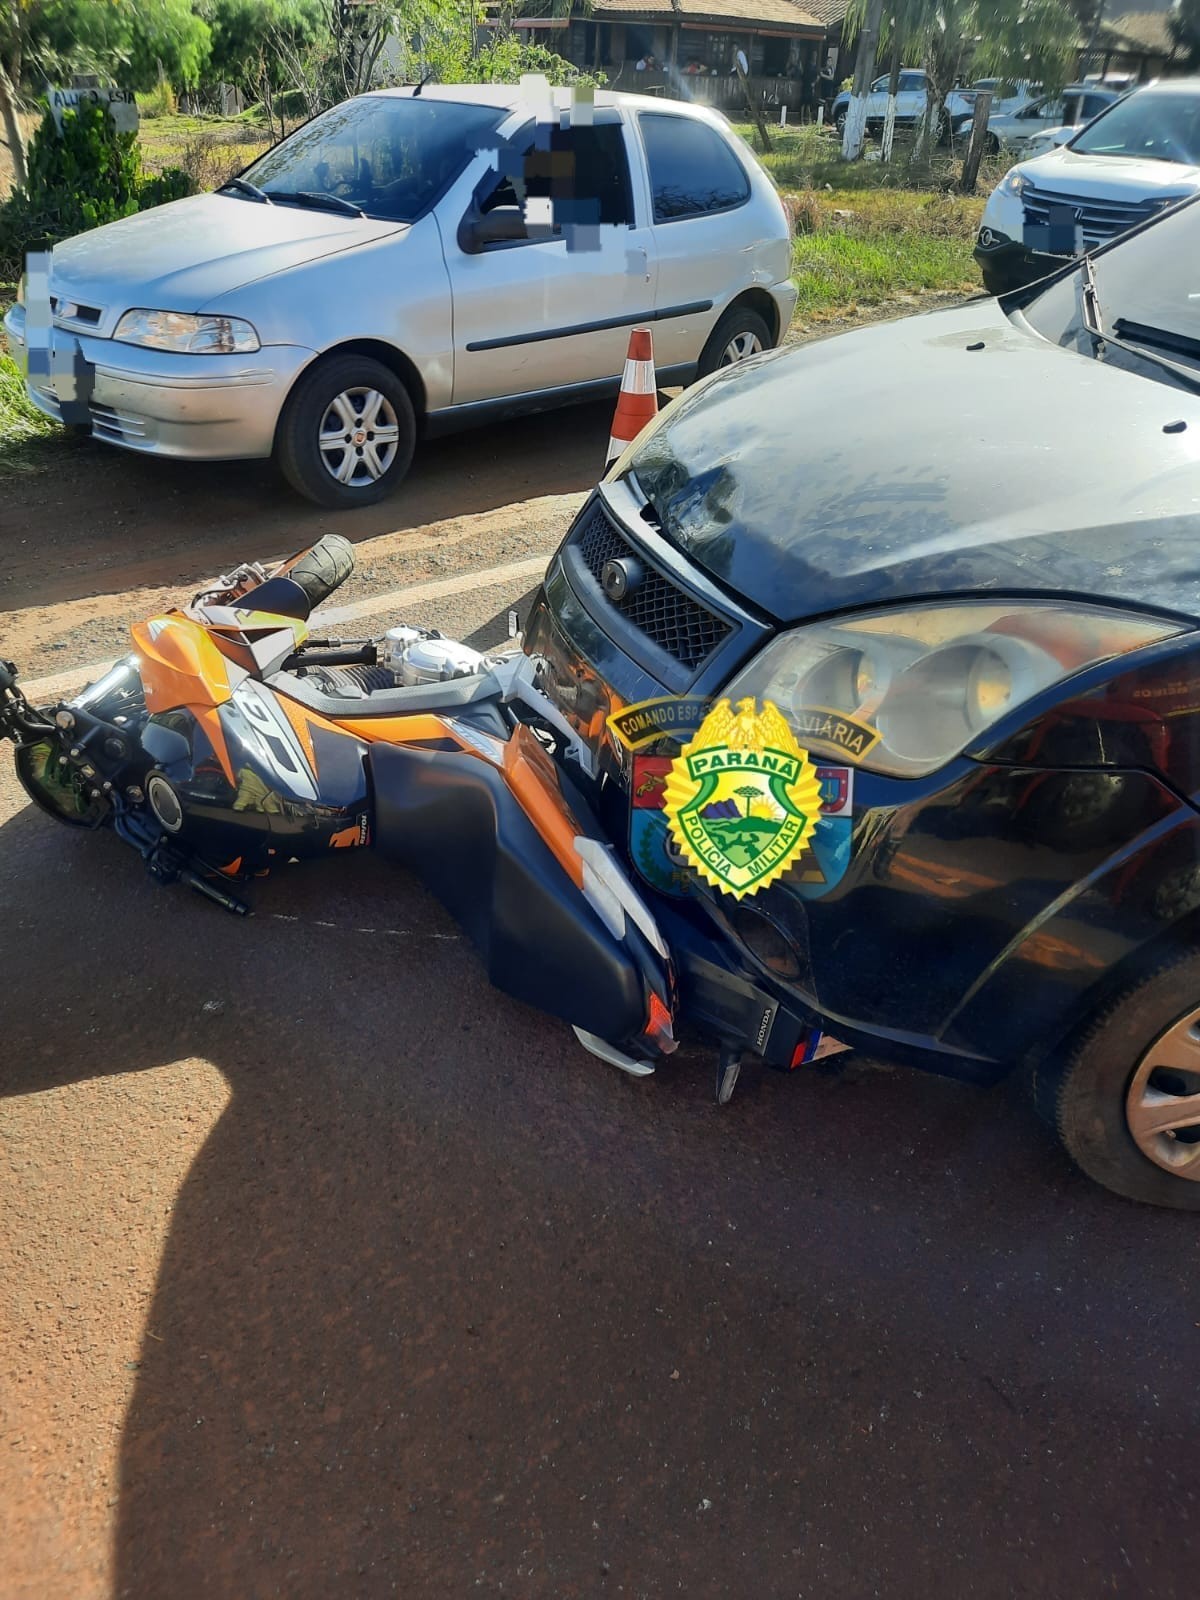 Motorista bêbado mata motociclista na PR-545 em Londrina, diz polícia